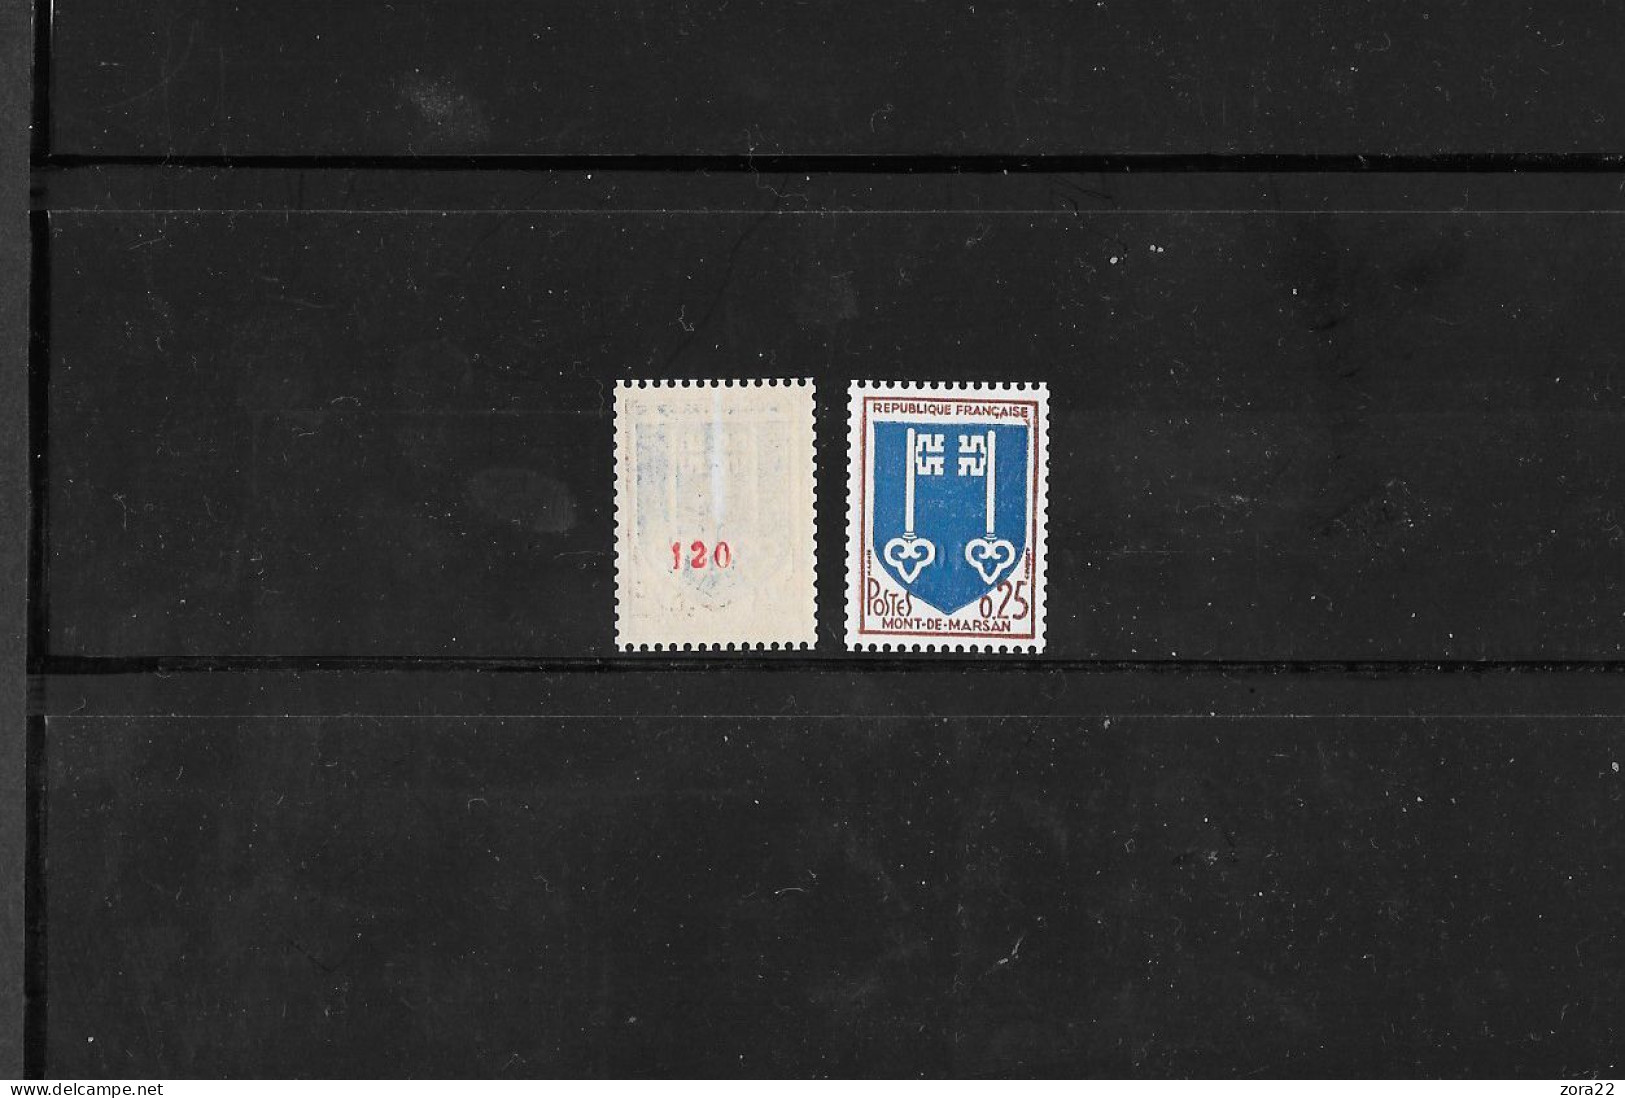 FRANCE-Roulettes: Yvert 1469a Avec N° Rouge**Authenticité Garantie. - Coil Stamps